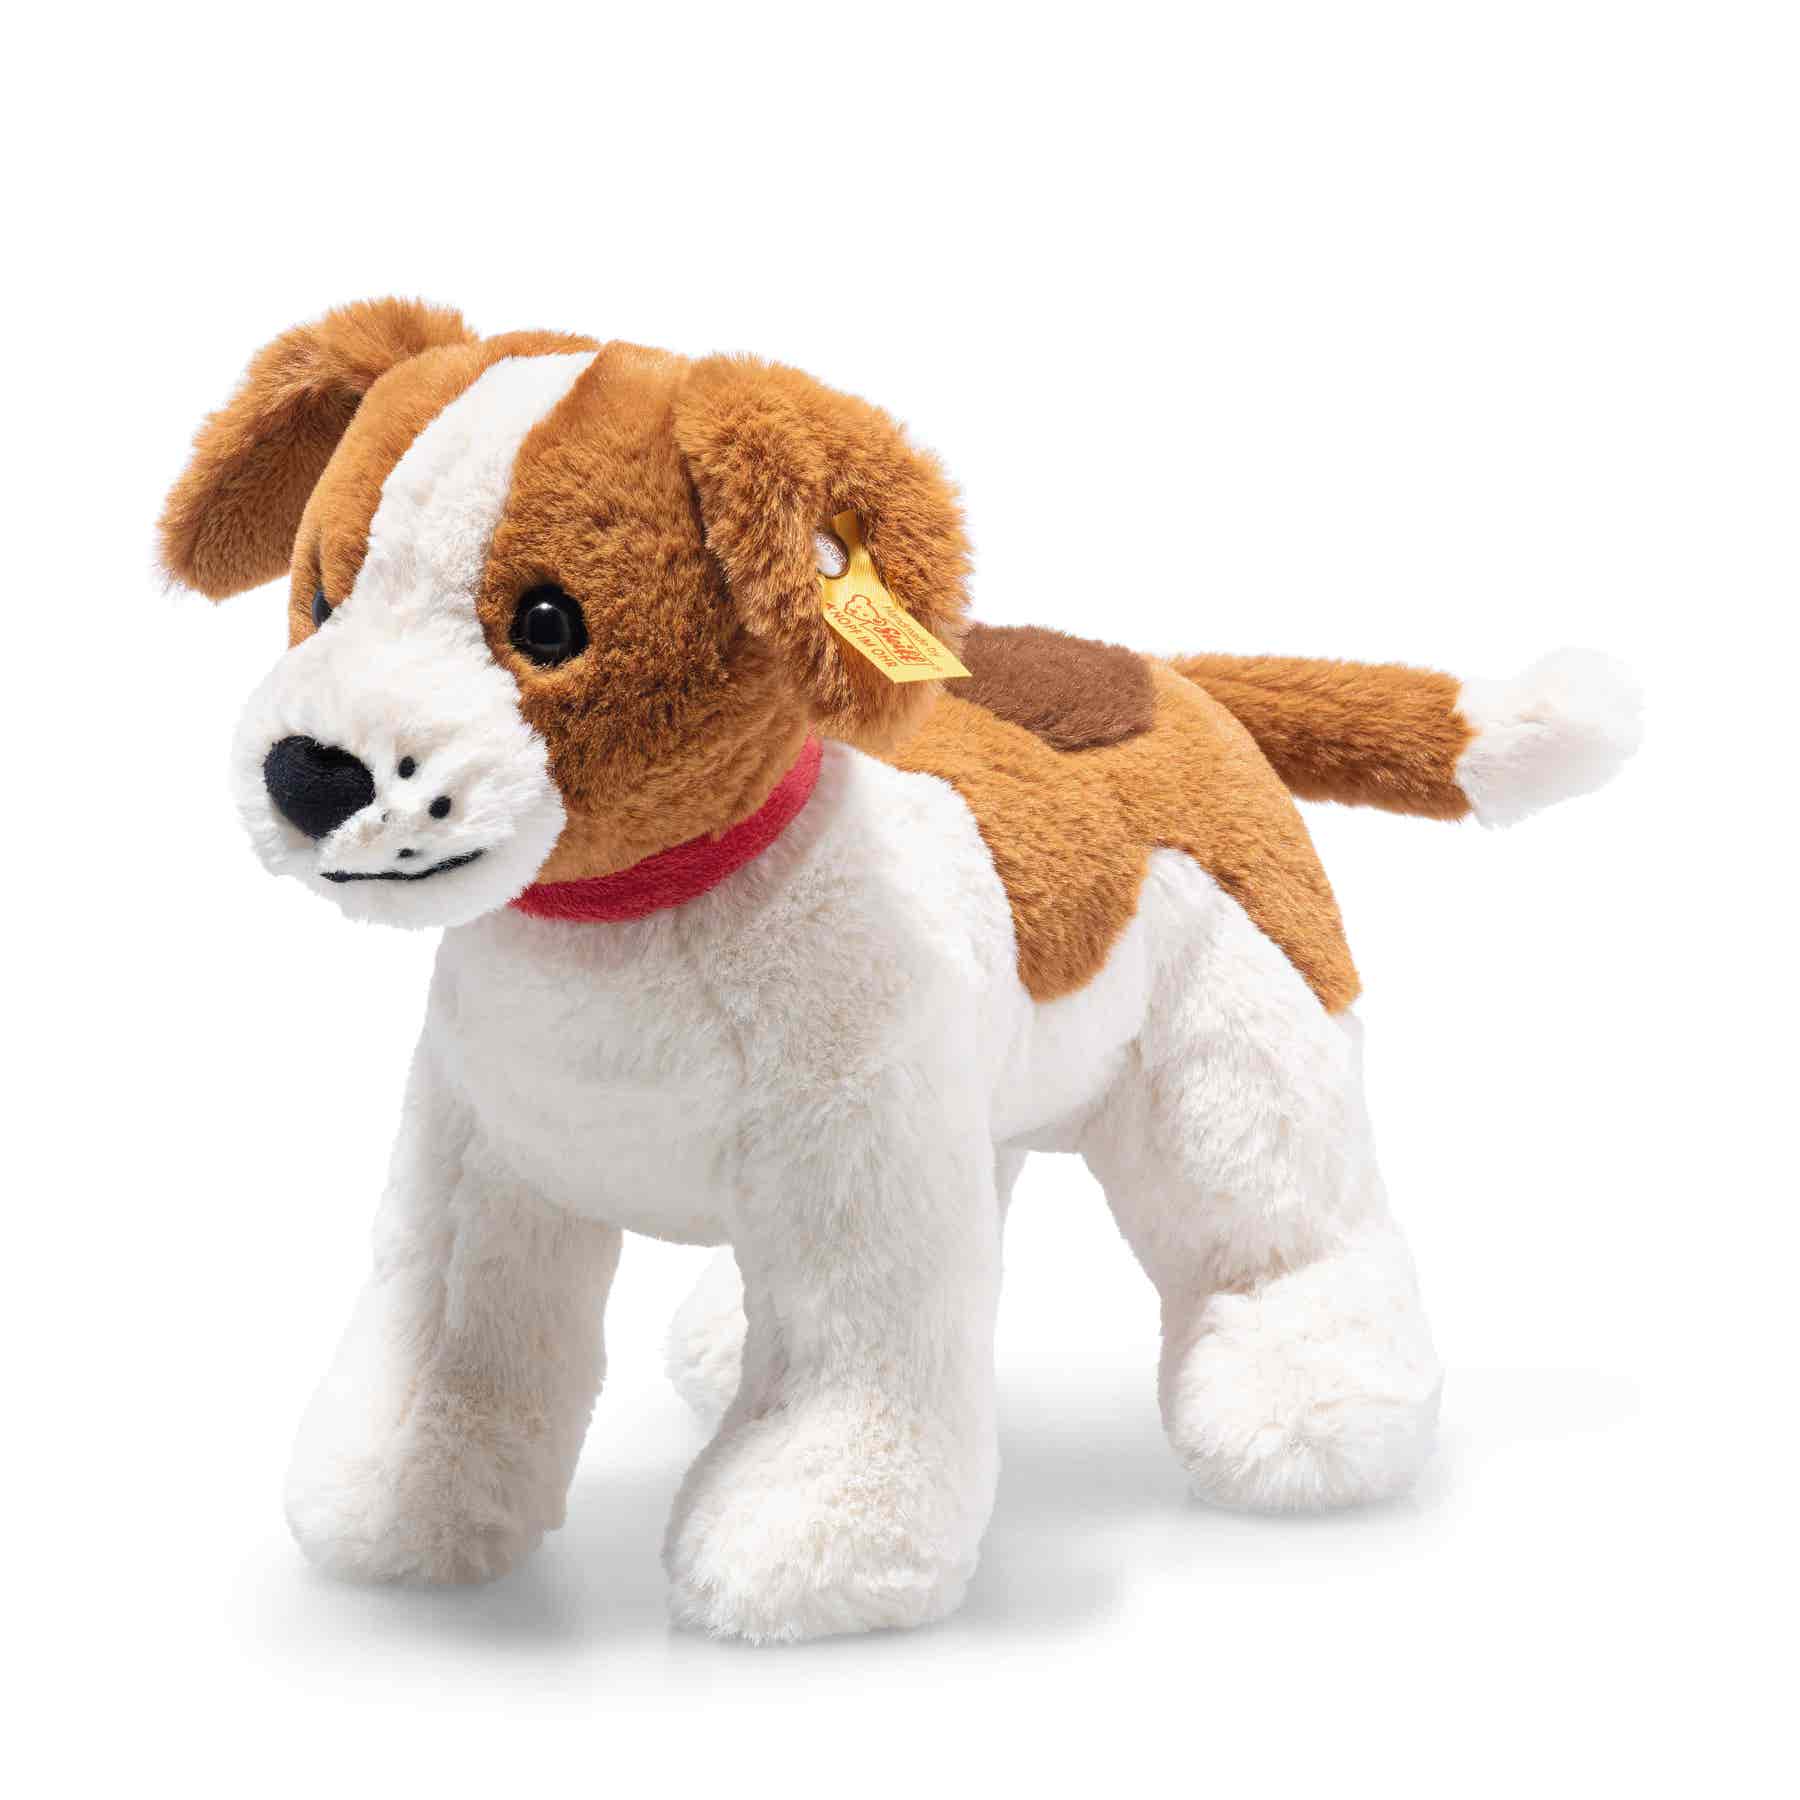 Steiff wճ}: Soft Cuddly Friends Snuffy dog